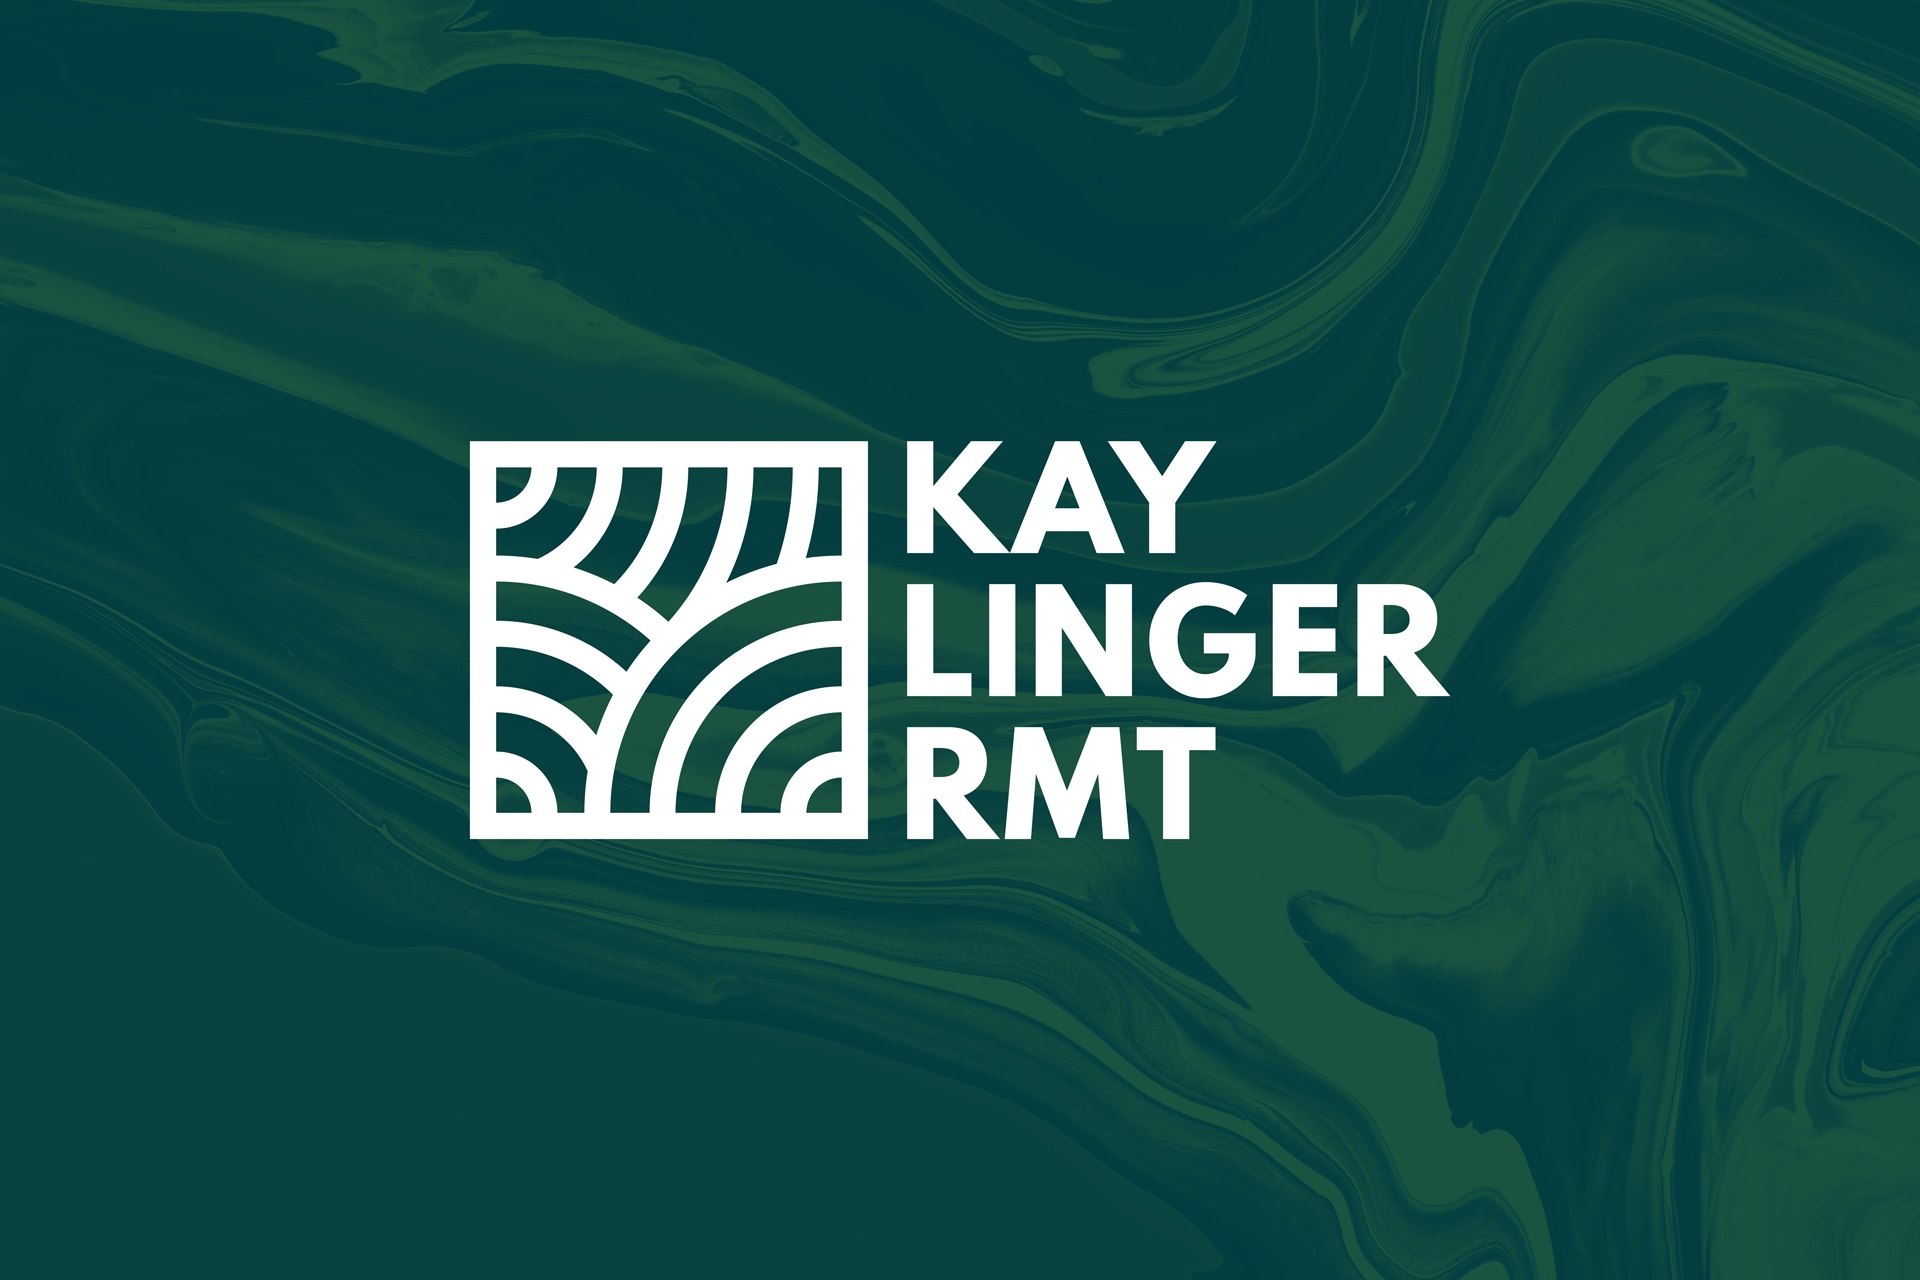 kay linger rmt logo design